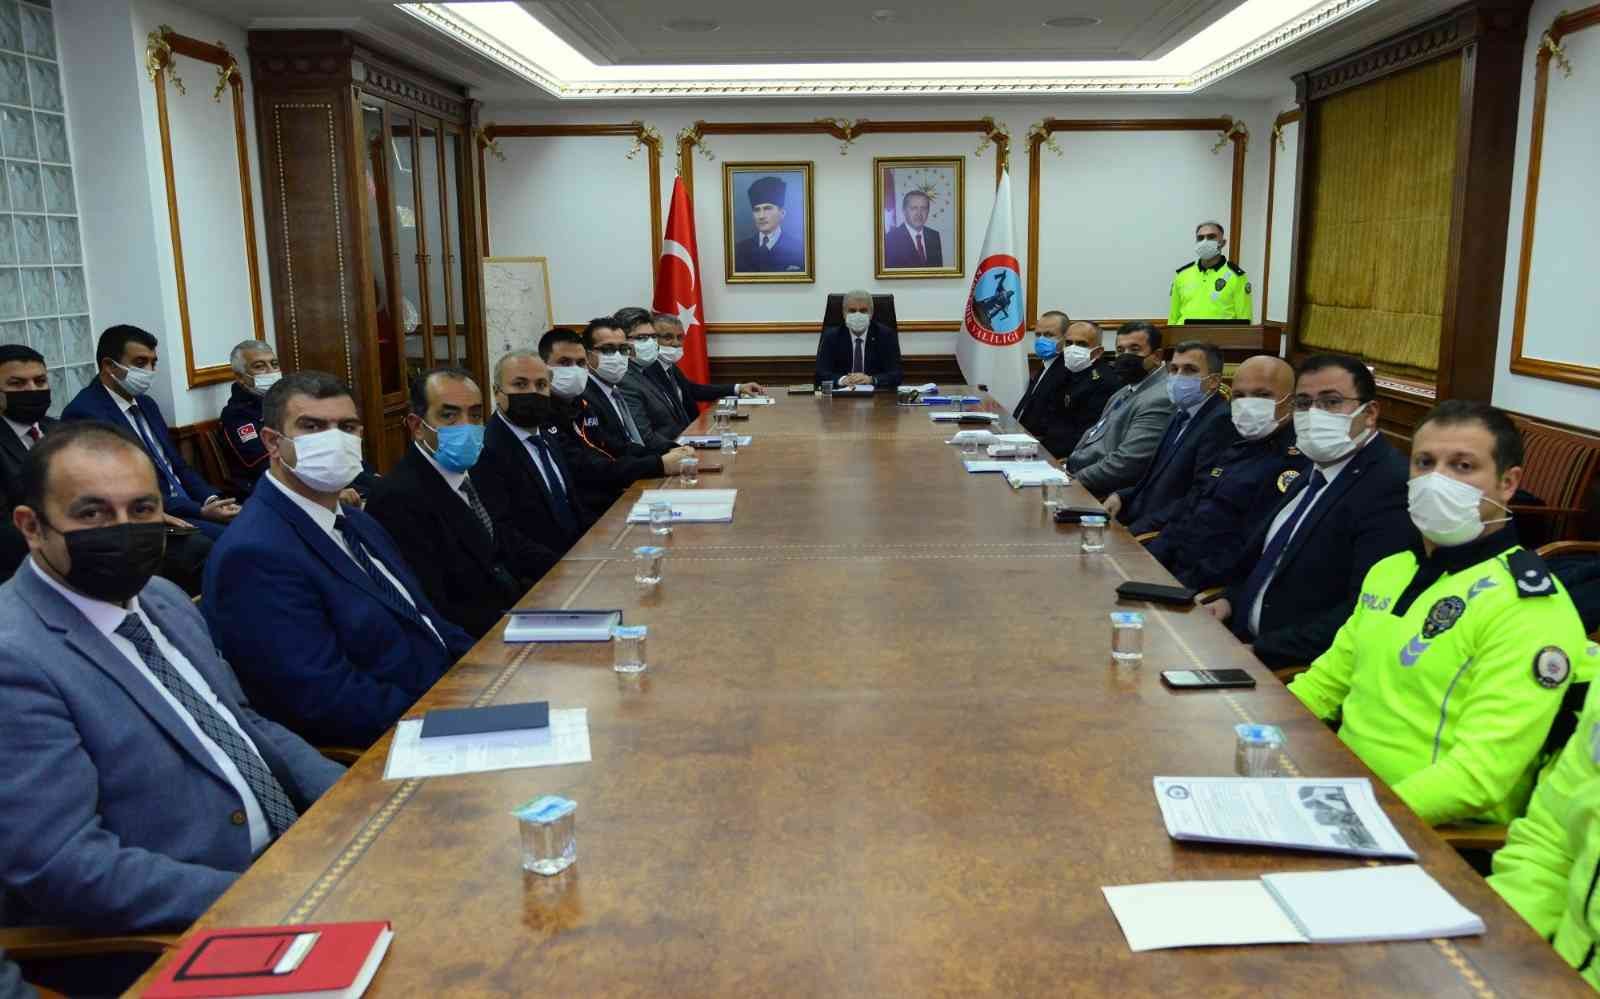 Kırşehir’de kış tedbirleri toplantısı yapıldı #kirsehir